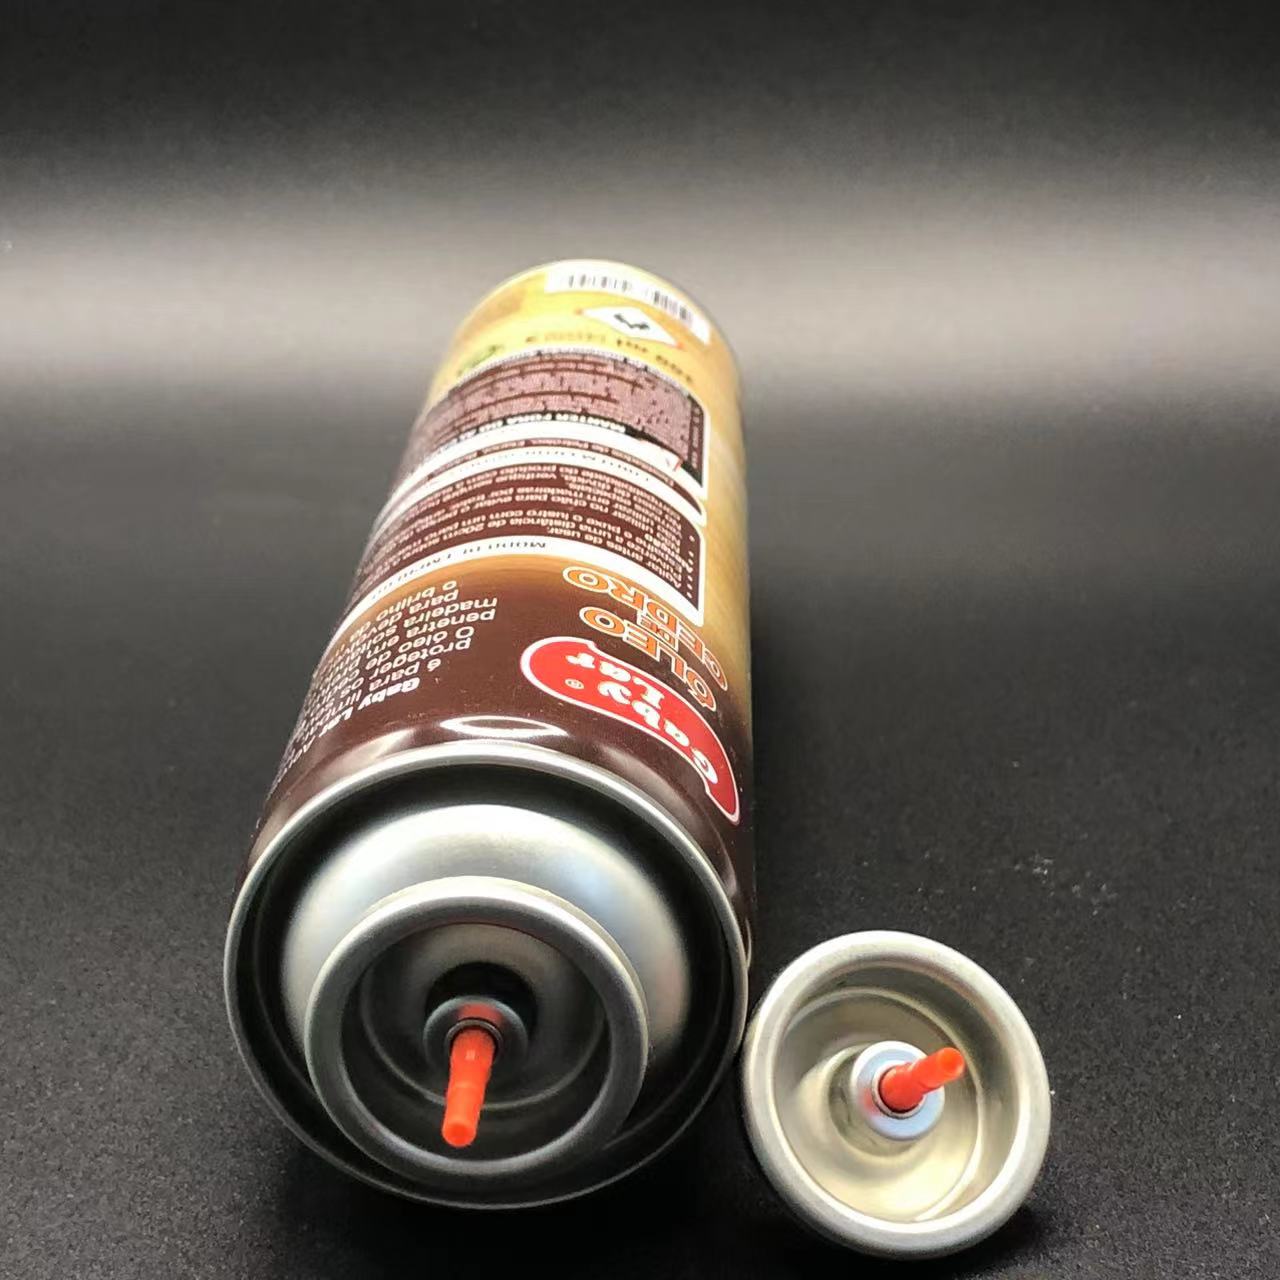 High Capacity Butane Gas Lighter Refill Valve Extended Refilling for Long Term Use